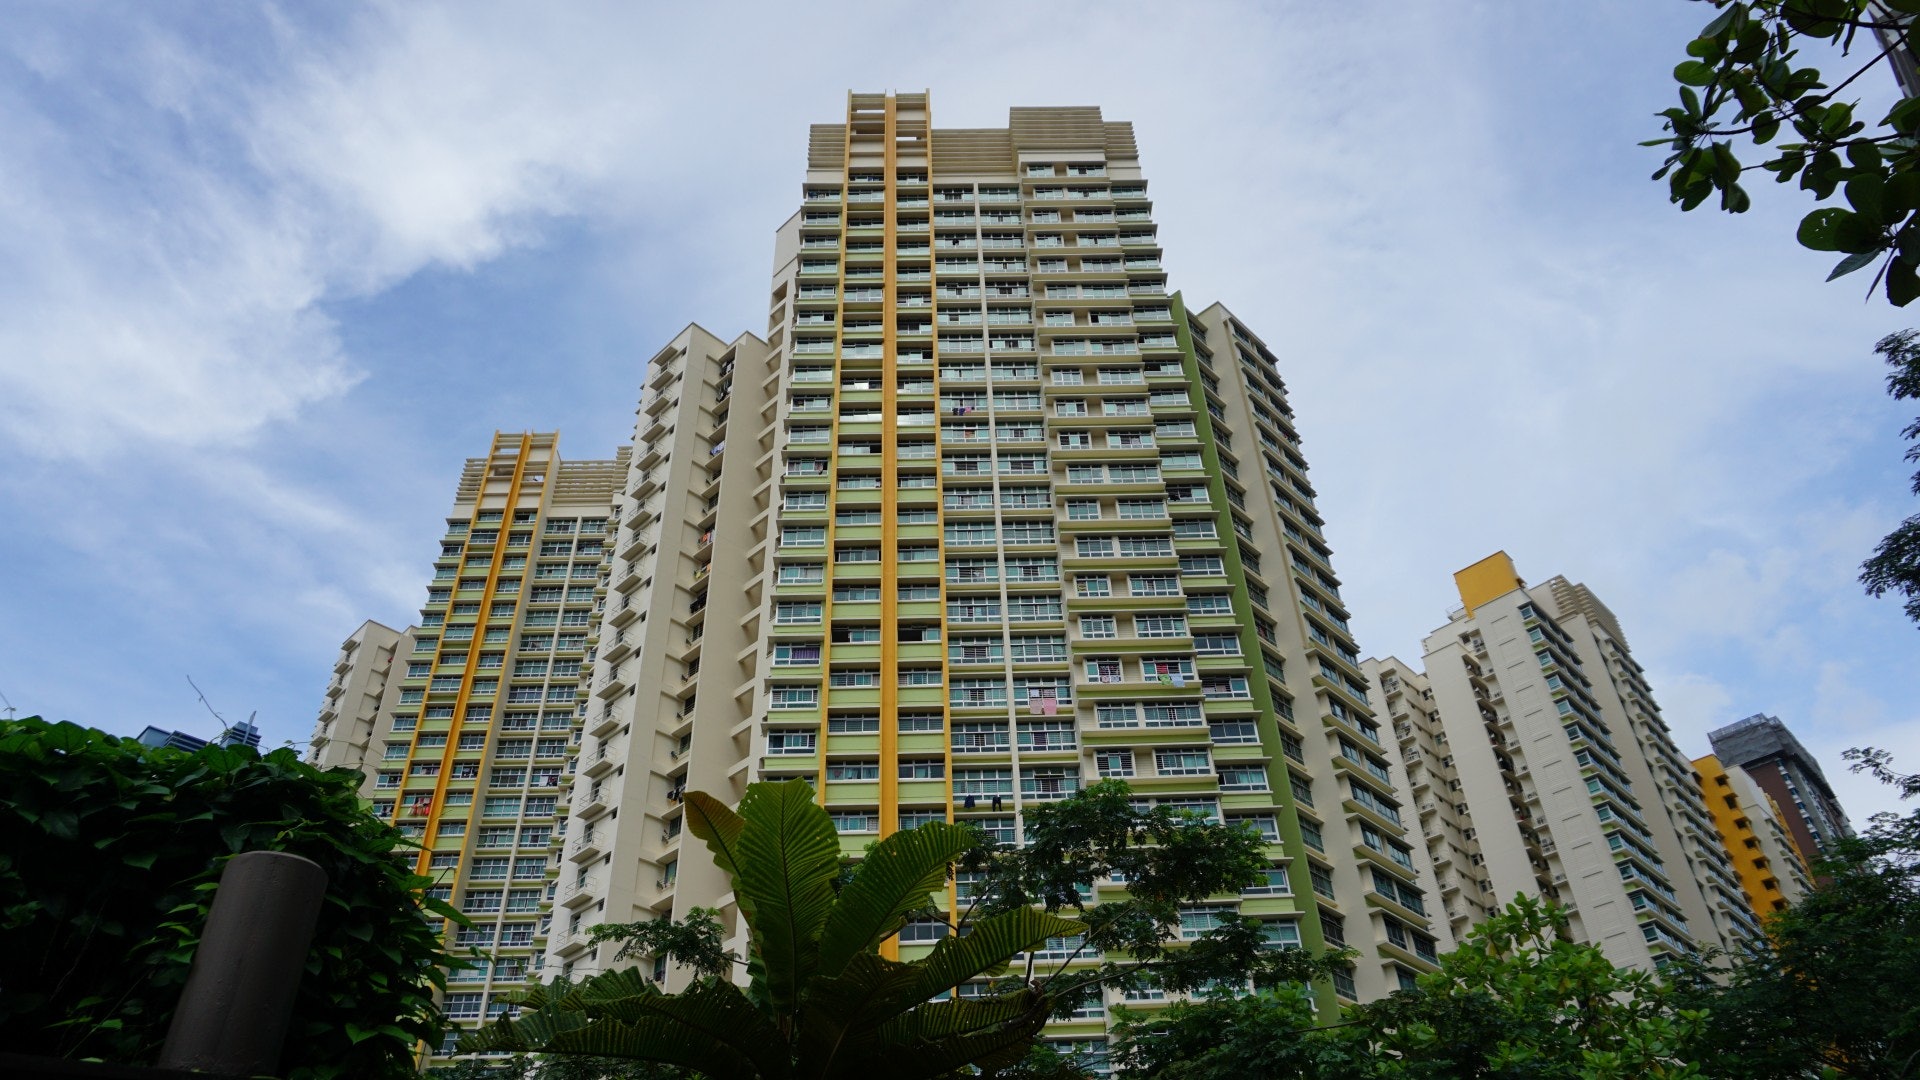 新加坡一套房子多少钱？华利世家顶层豪宅售价1750万新币 - 新加坡房产网